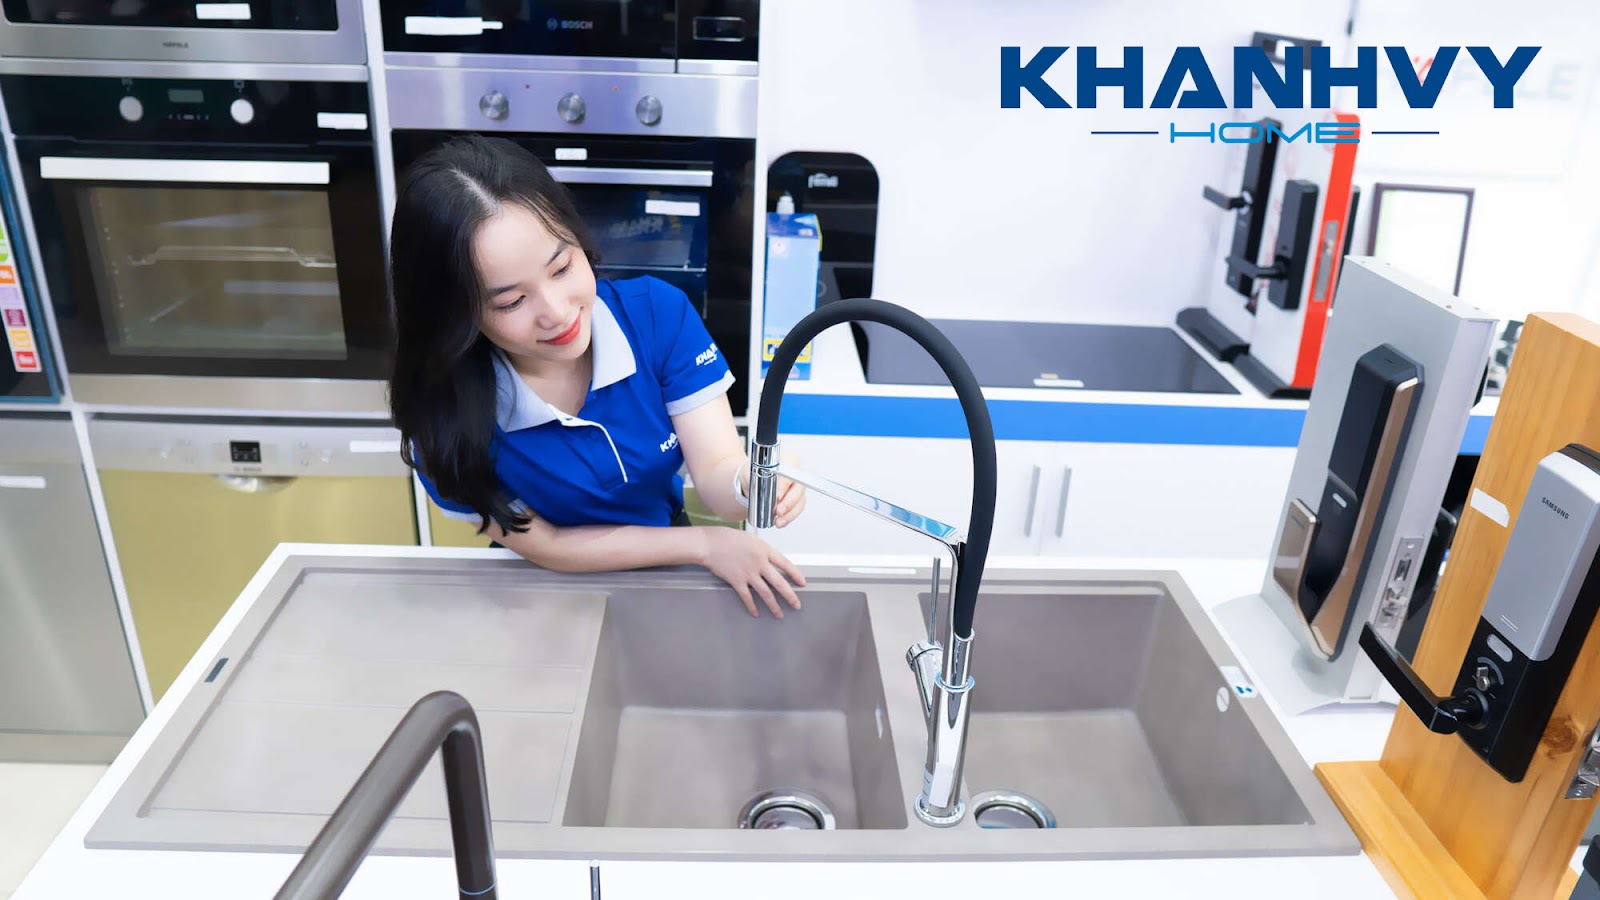 Khánh Vy Home cung cấp những mẫu vòi rửa chén hiện đại, tinh tế, được sản xuất bởi những thương hiệu thiết bị gia dụng hàng đầu